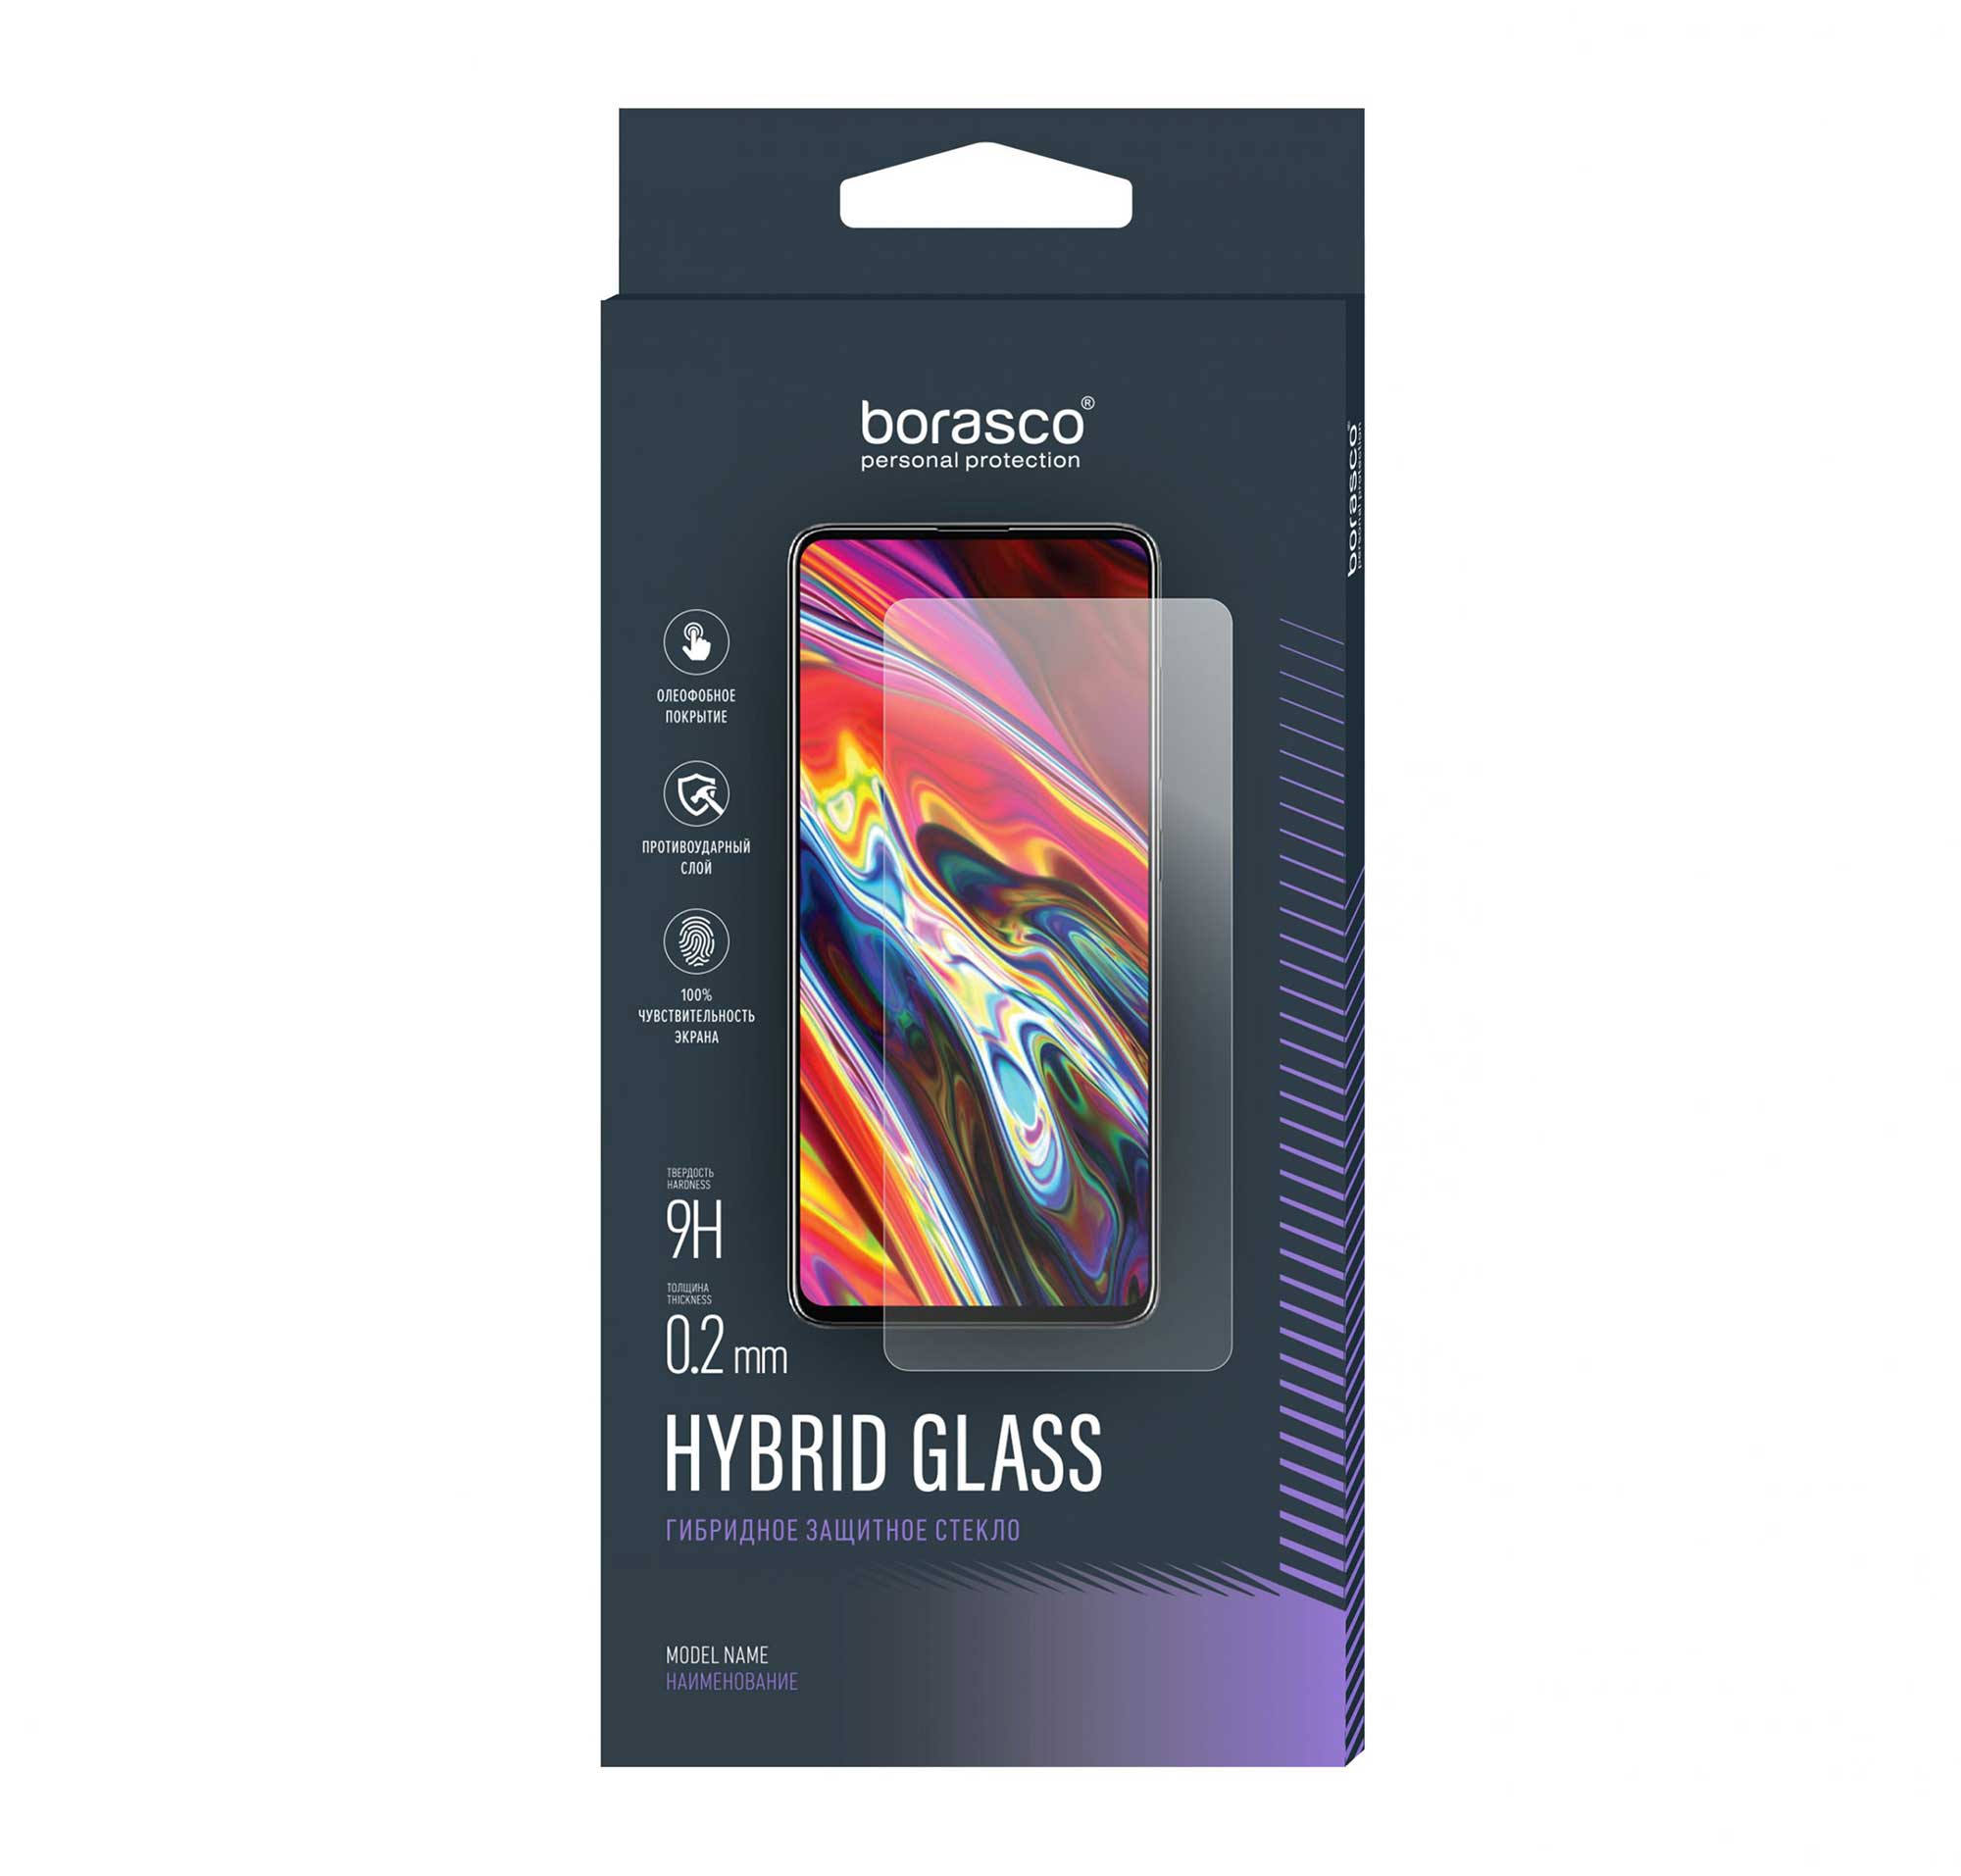 Защитное стекло BoraSCO Hybrid Glass для BQ 6042L Magic E пленка защитная uv glass для задней панели для bq 6040l magic